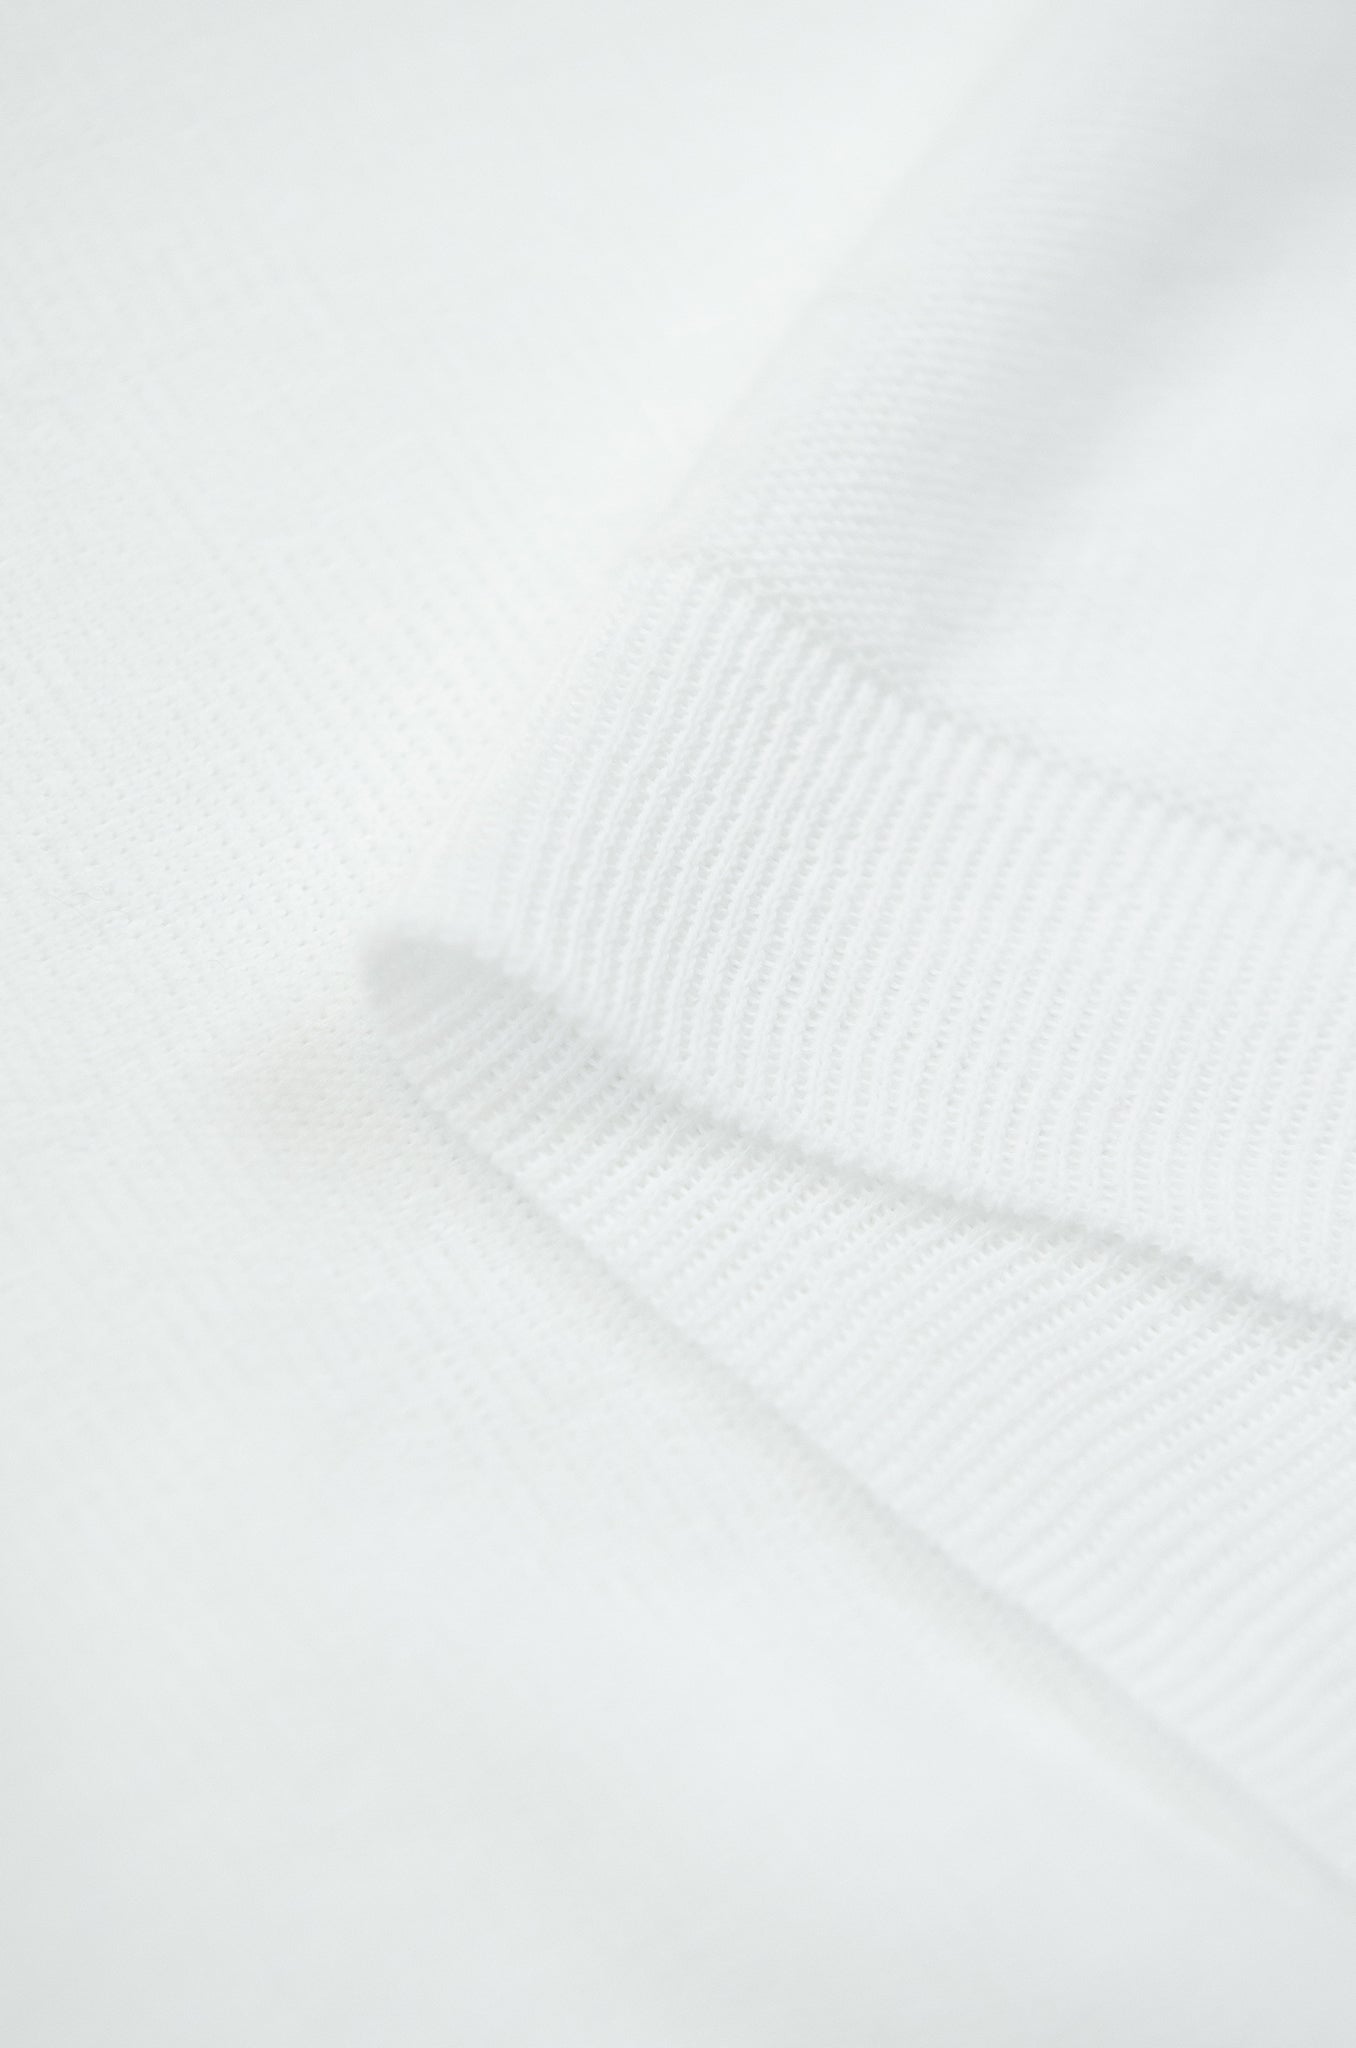 Maté polo tricot compact cotton (ice white)